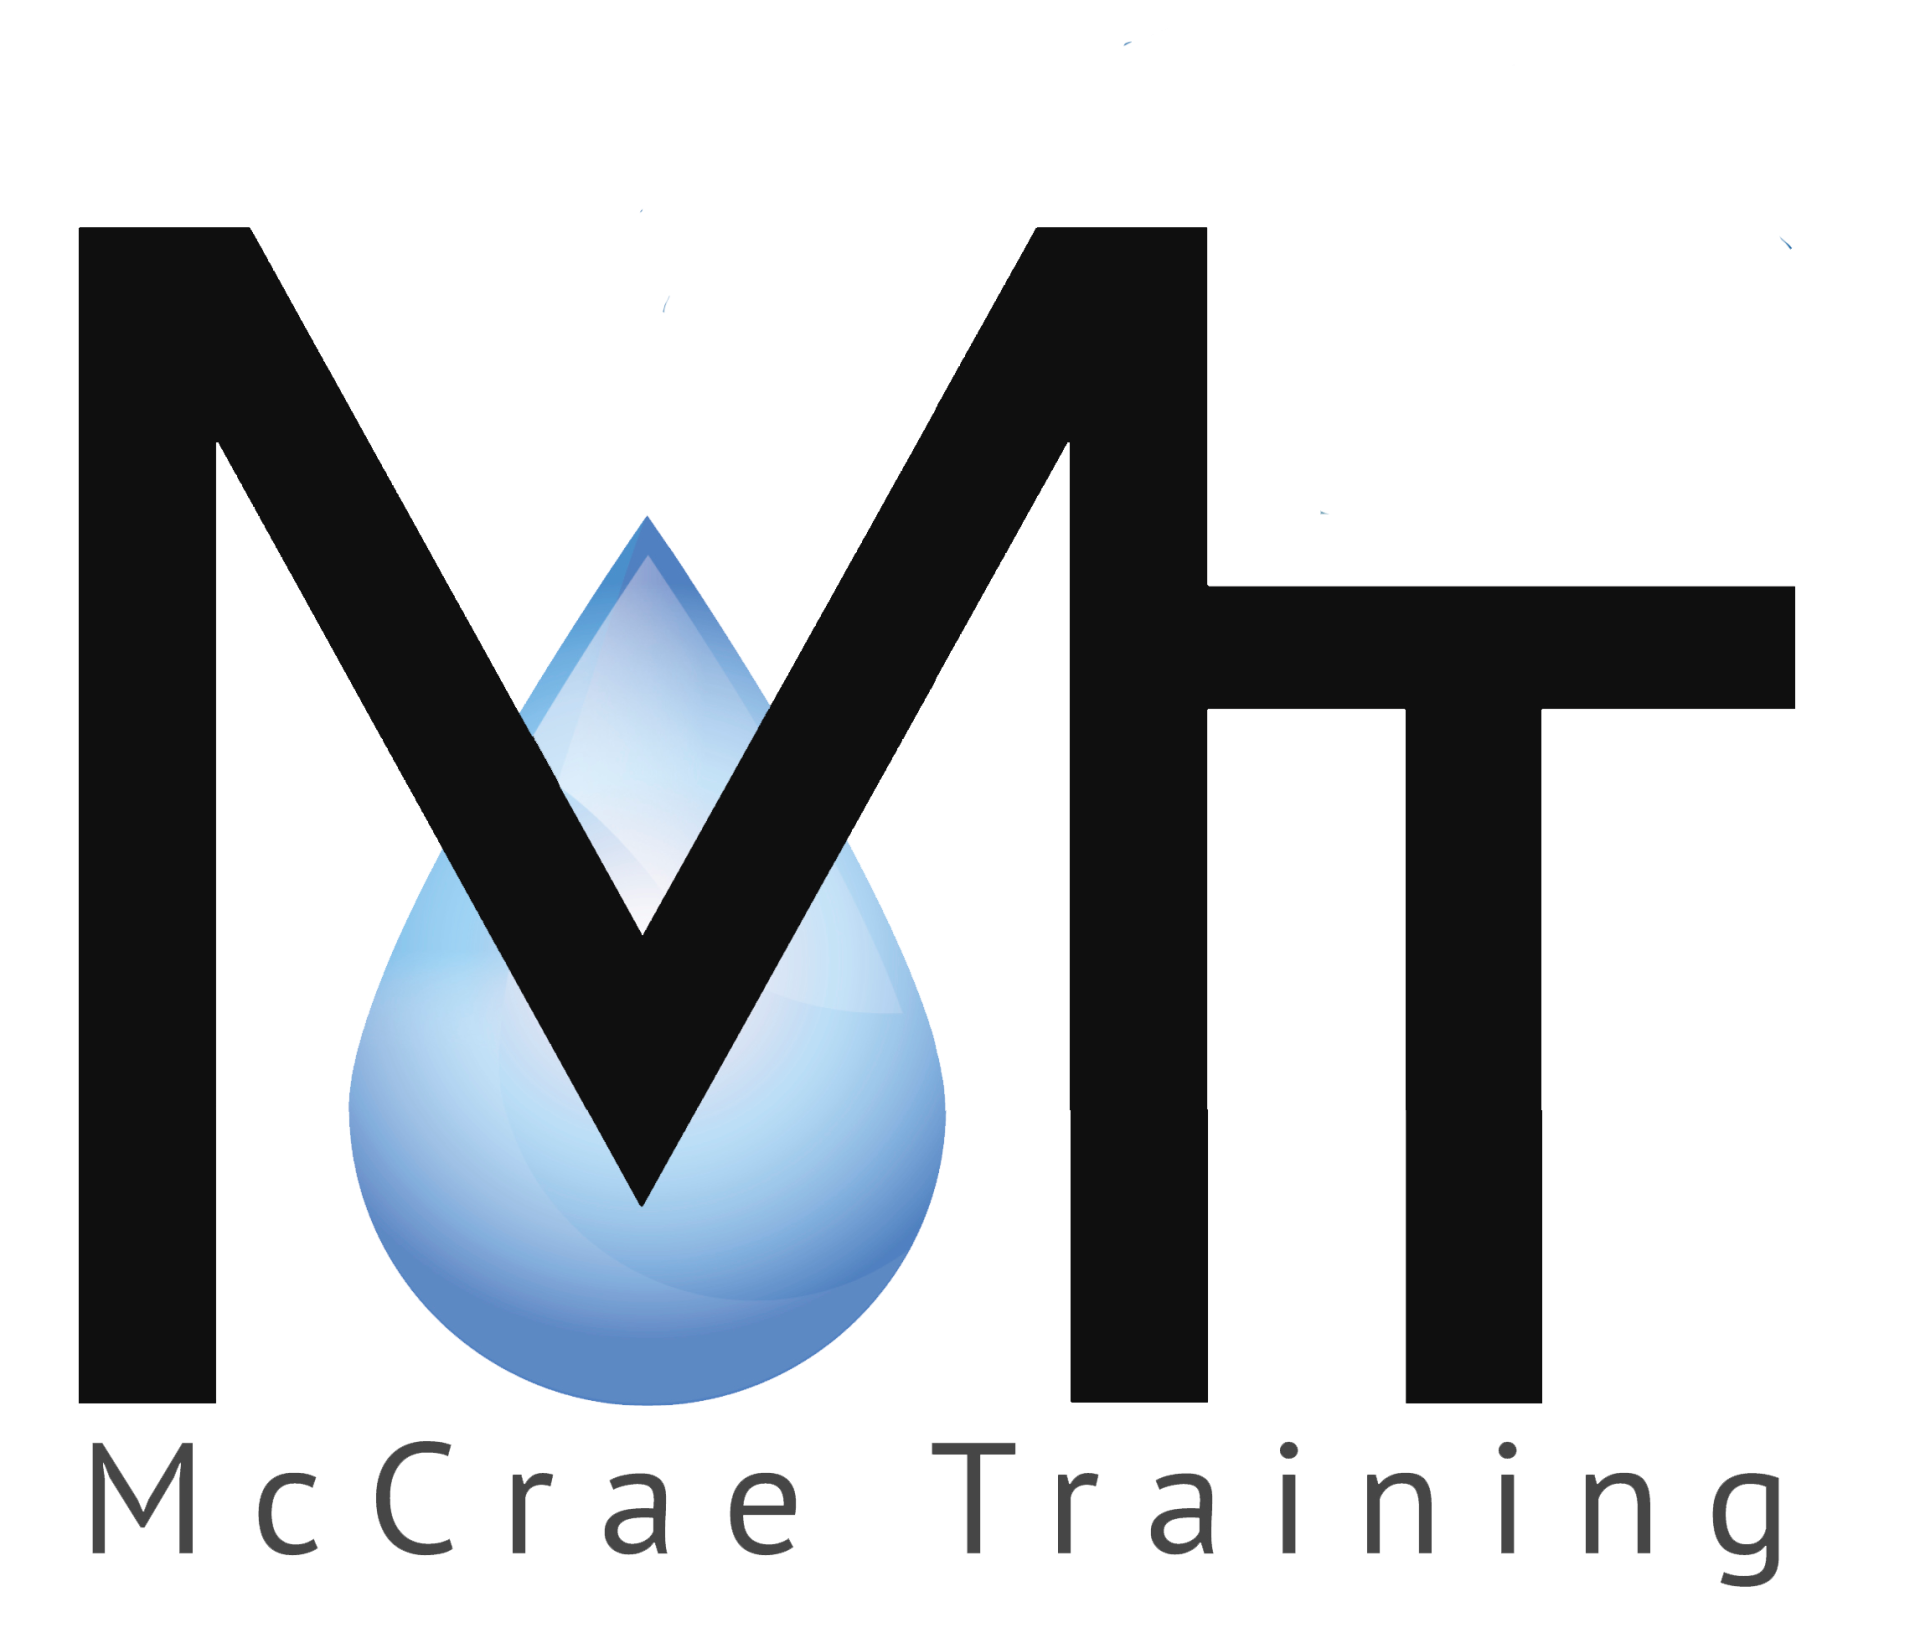 McCrae Training